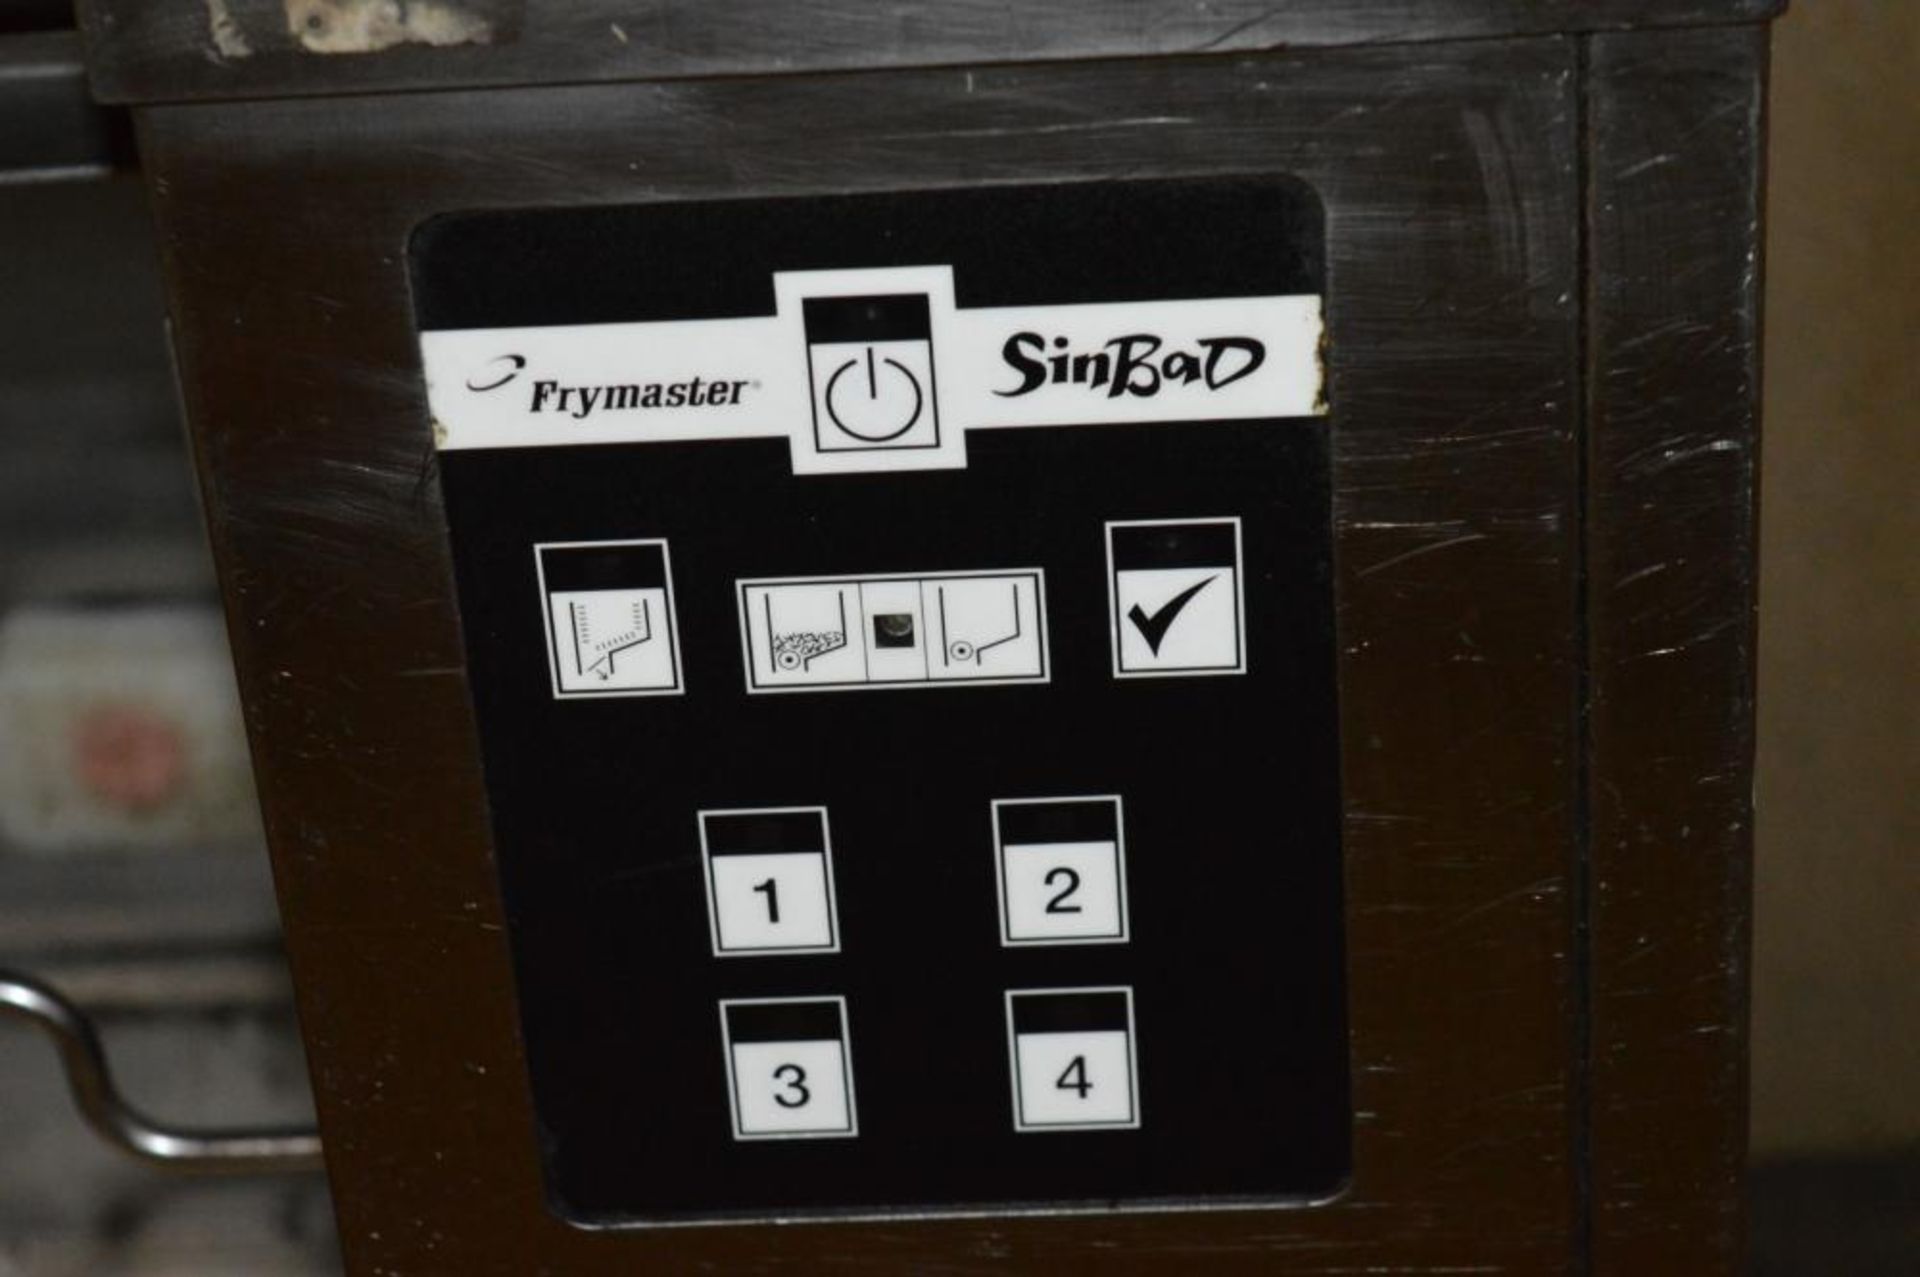 1 x Frymaster Sinbad Chip Dispenser Portioner - Model SBD - H136 x W50 x D63 cms - 240v - CL290 - Re - Image 3 of 4